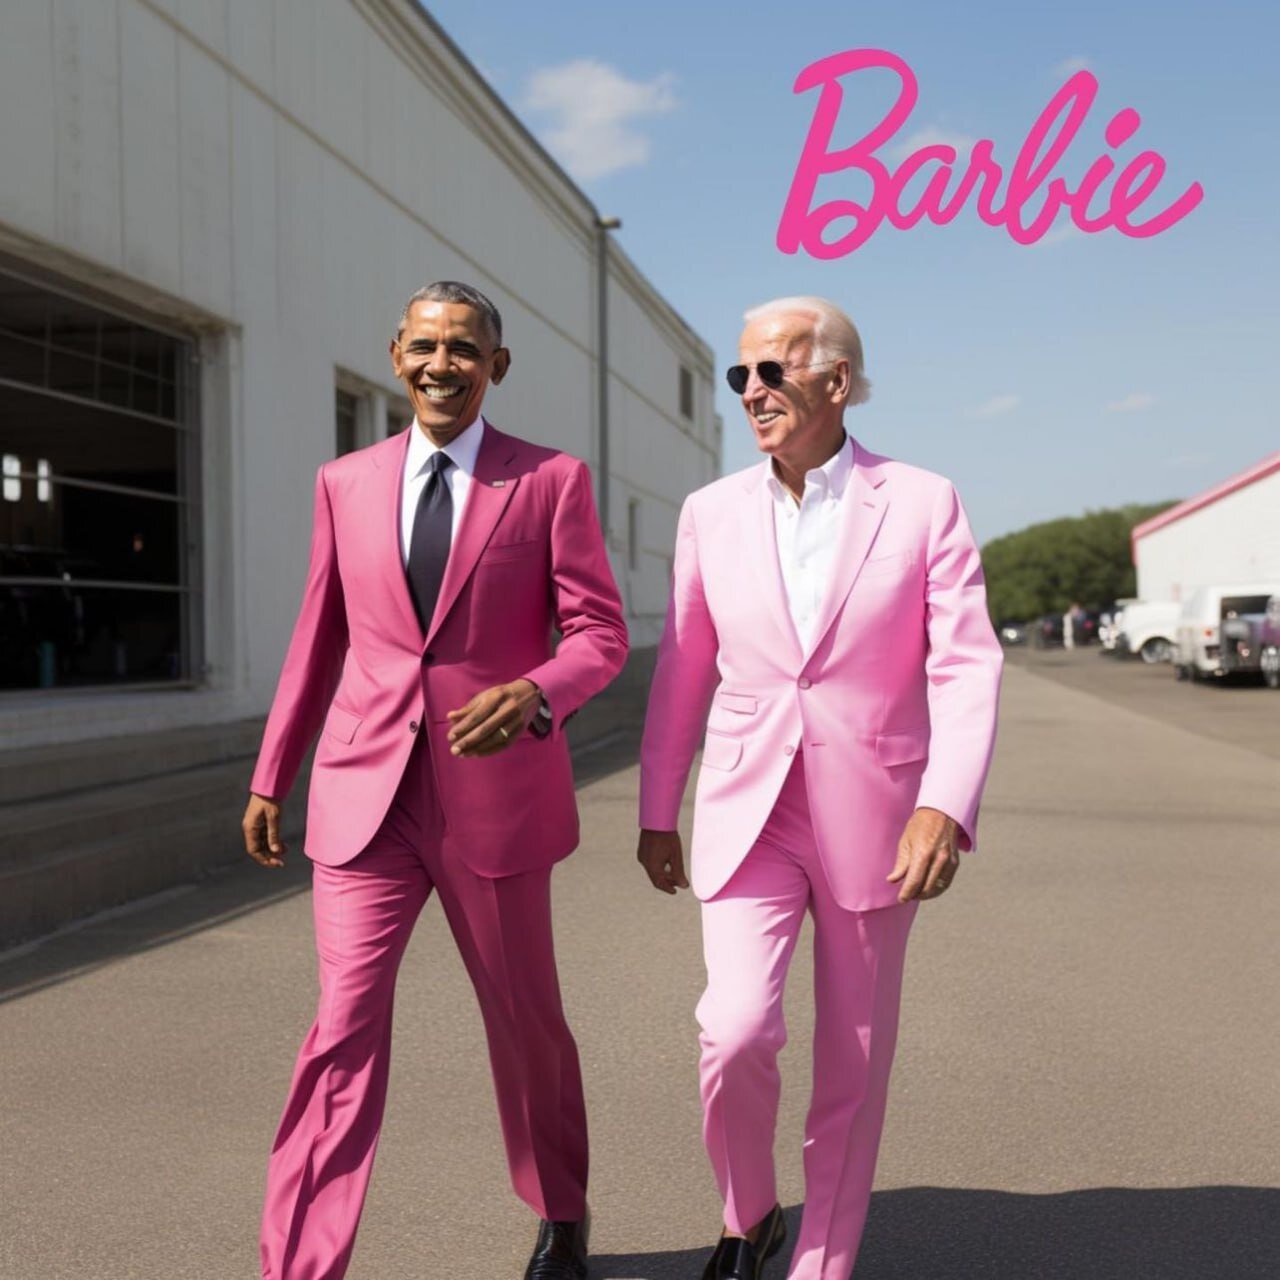 عکس | شوخی خبرساز با باراک اوباما و جو بایدن؛ کت شلوار صورتی به سوی باربی!